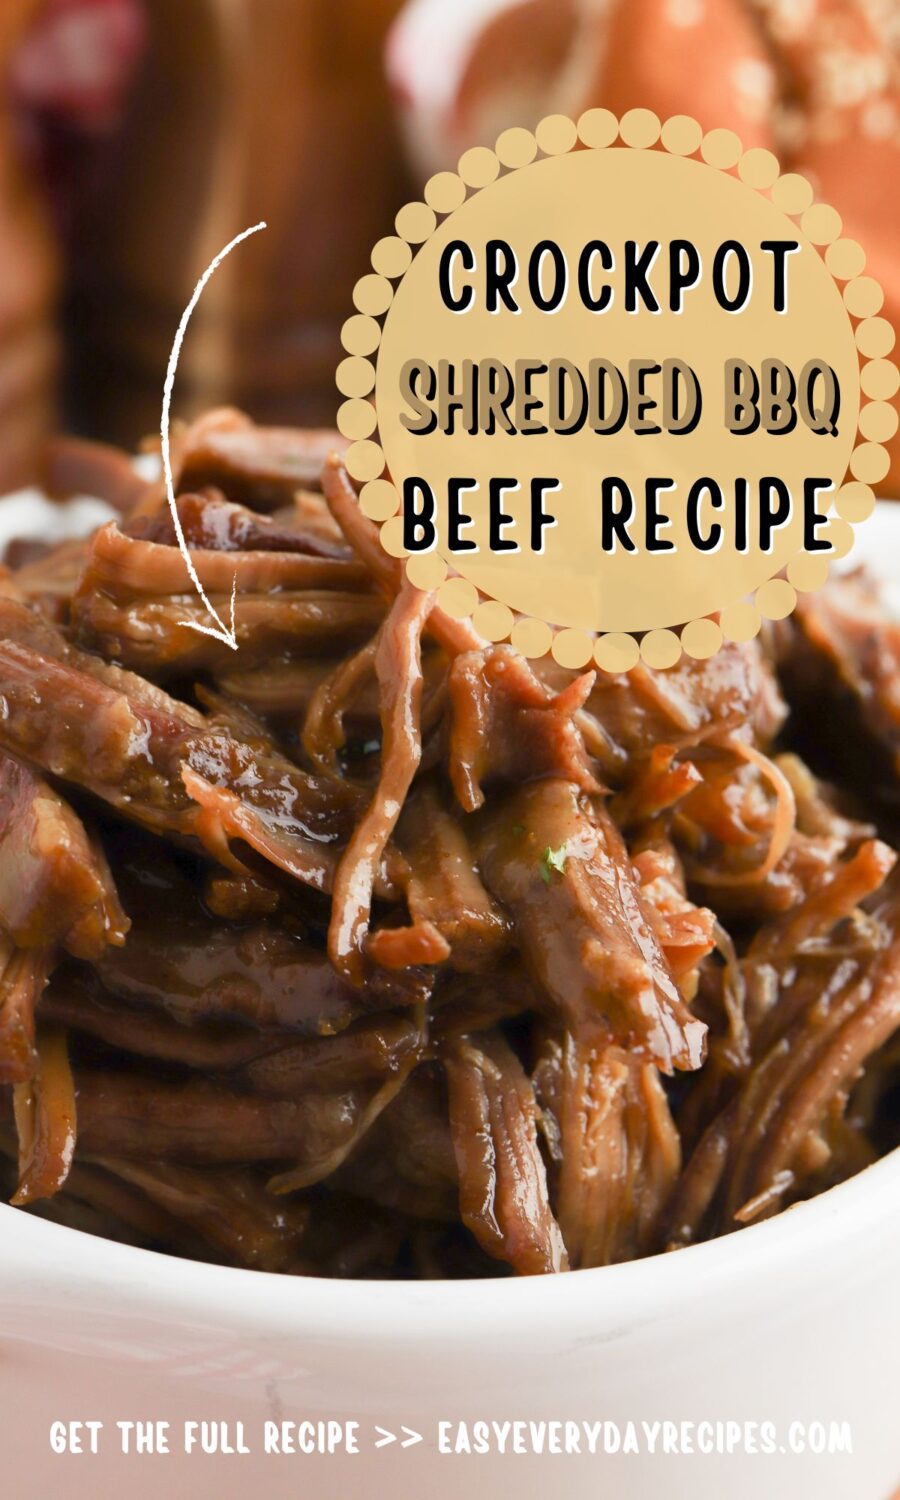 Crockpot shredded bbq beef recipe.